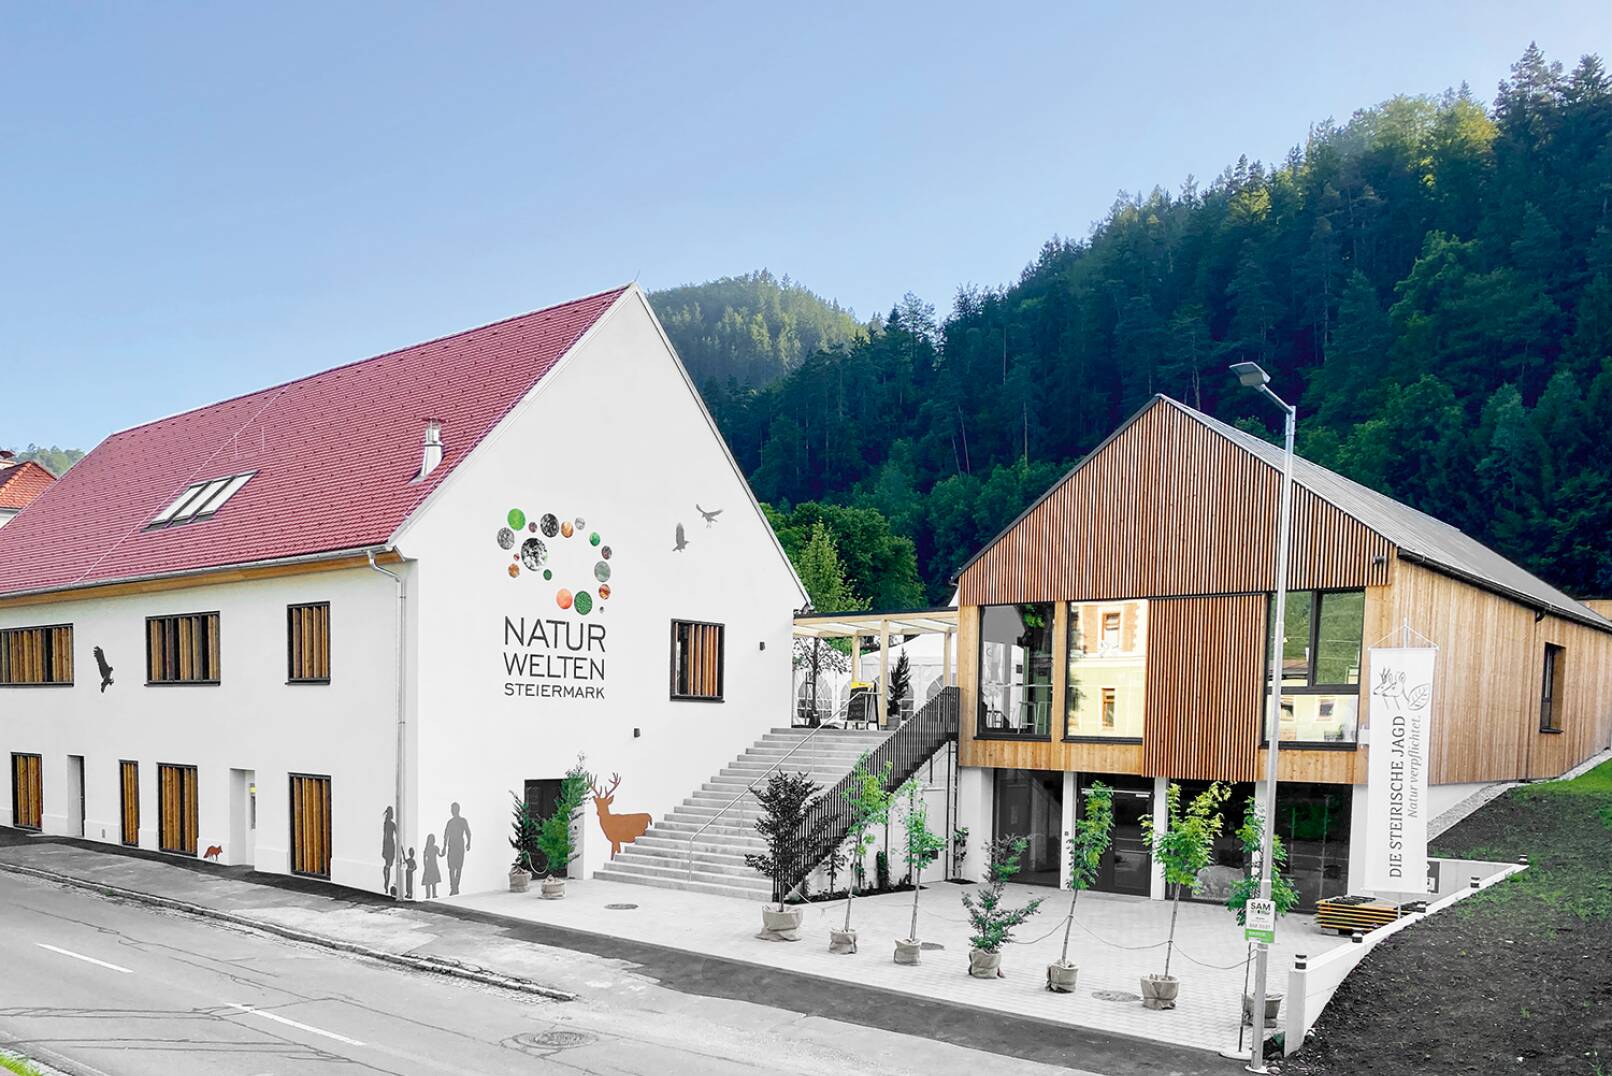 Modern und dennoch mit altem Flair präsentieren sich die Naturwelten Steiermark